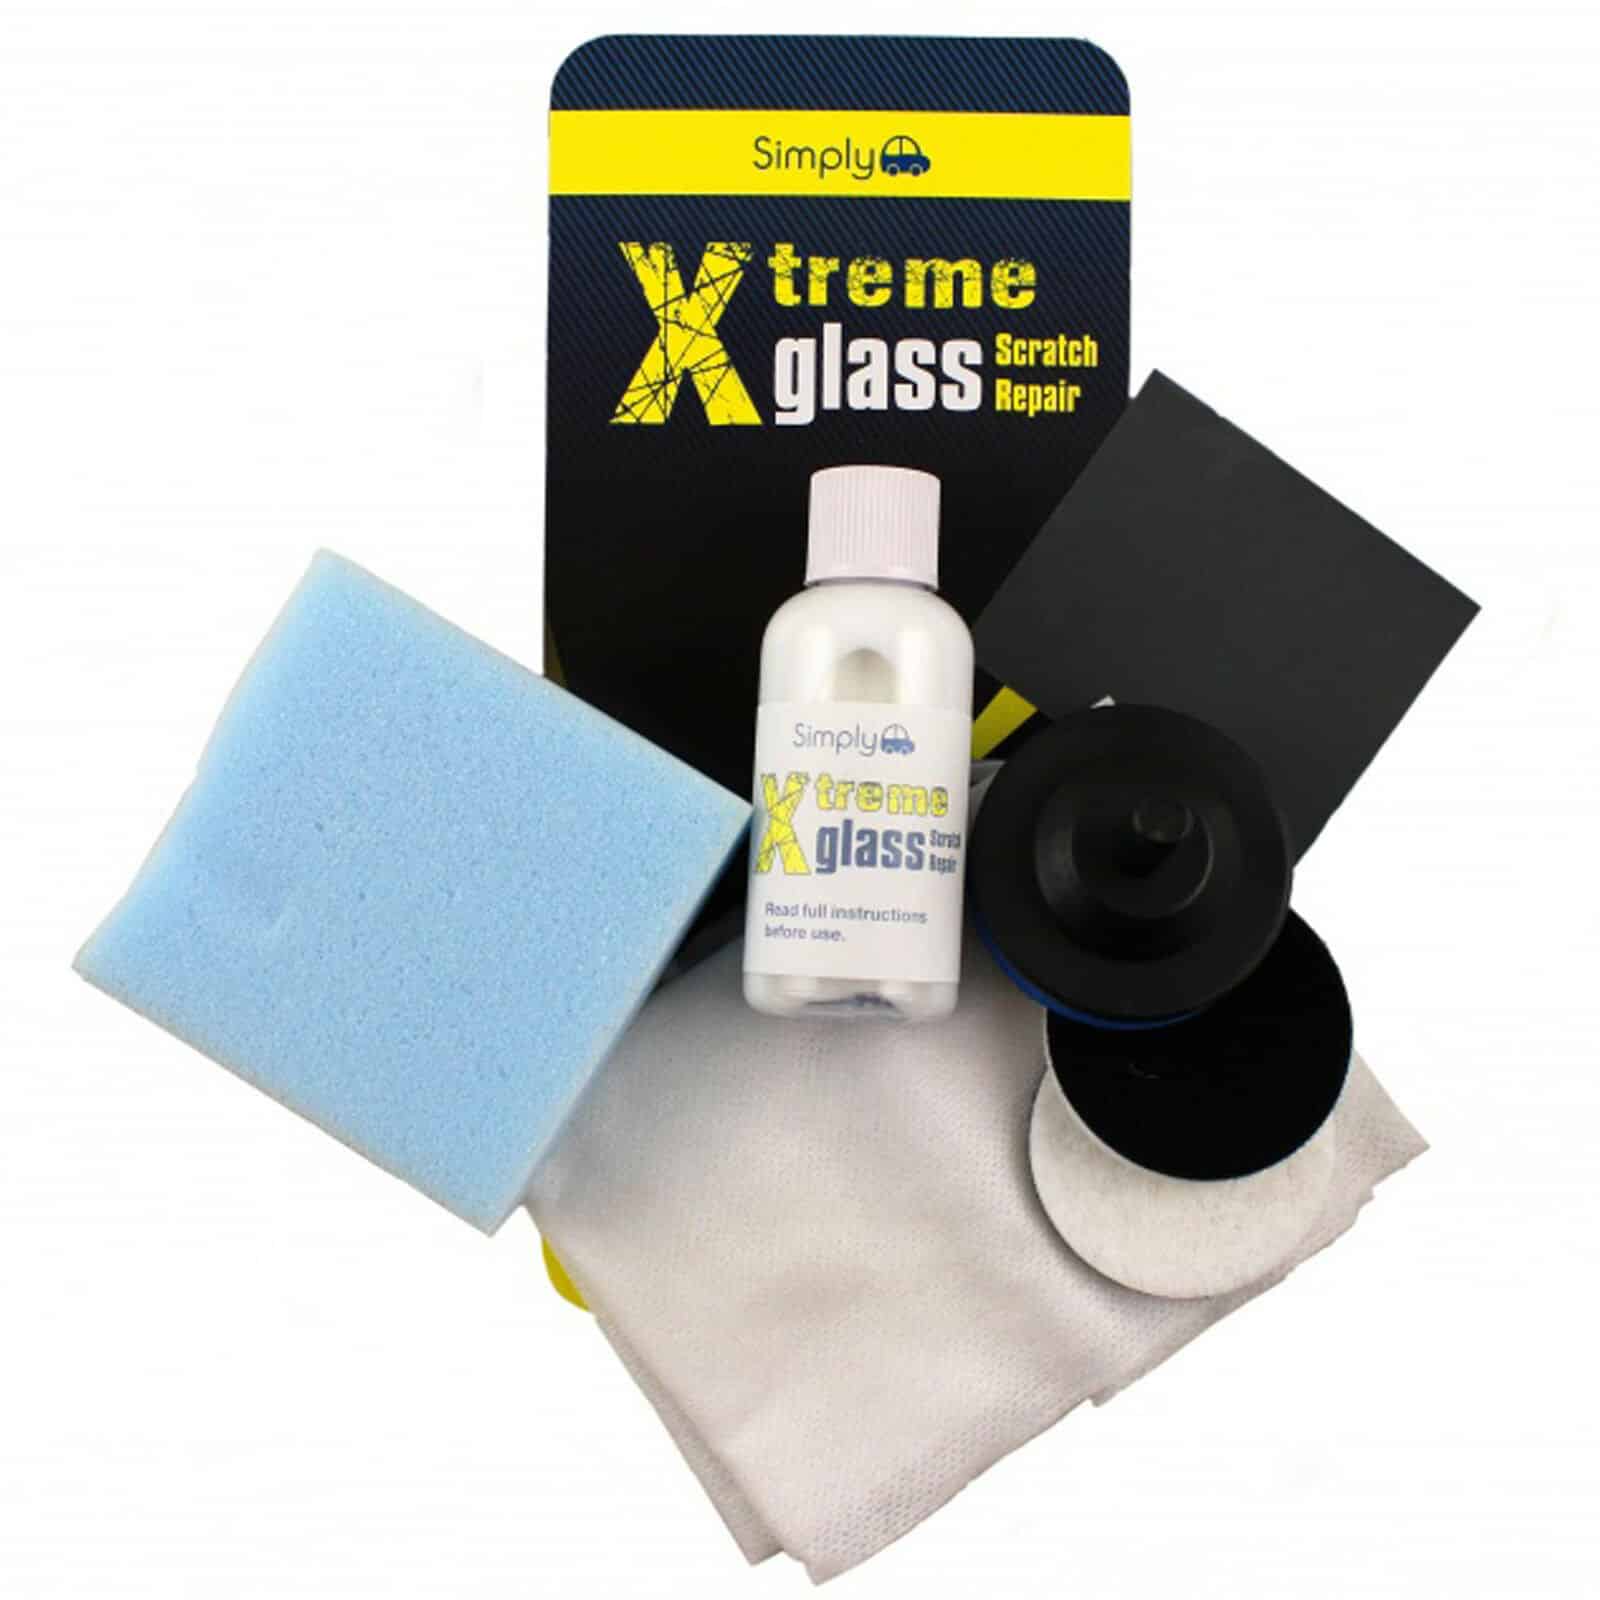 NEW! Xtreme Glass Scratch Repair Kit, Repair windscreen wiper scratches ...